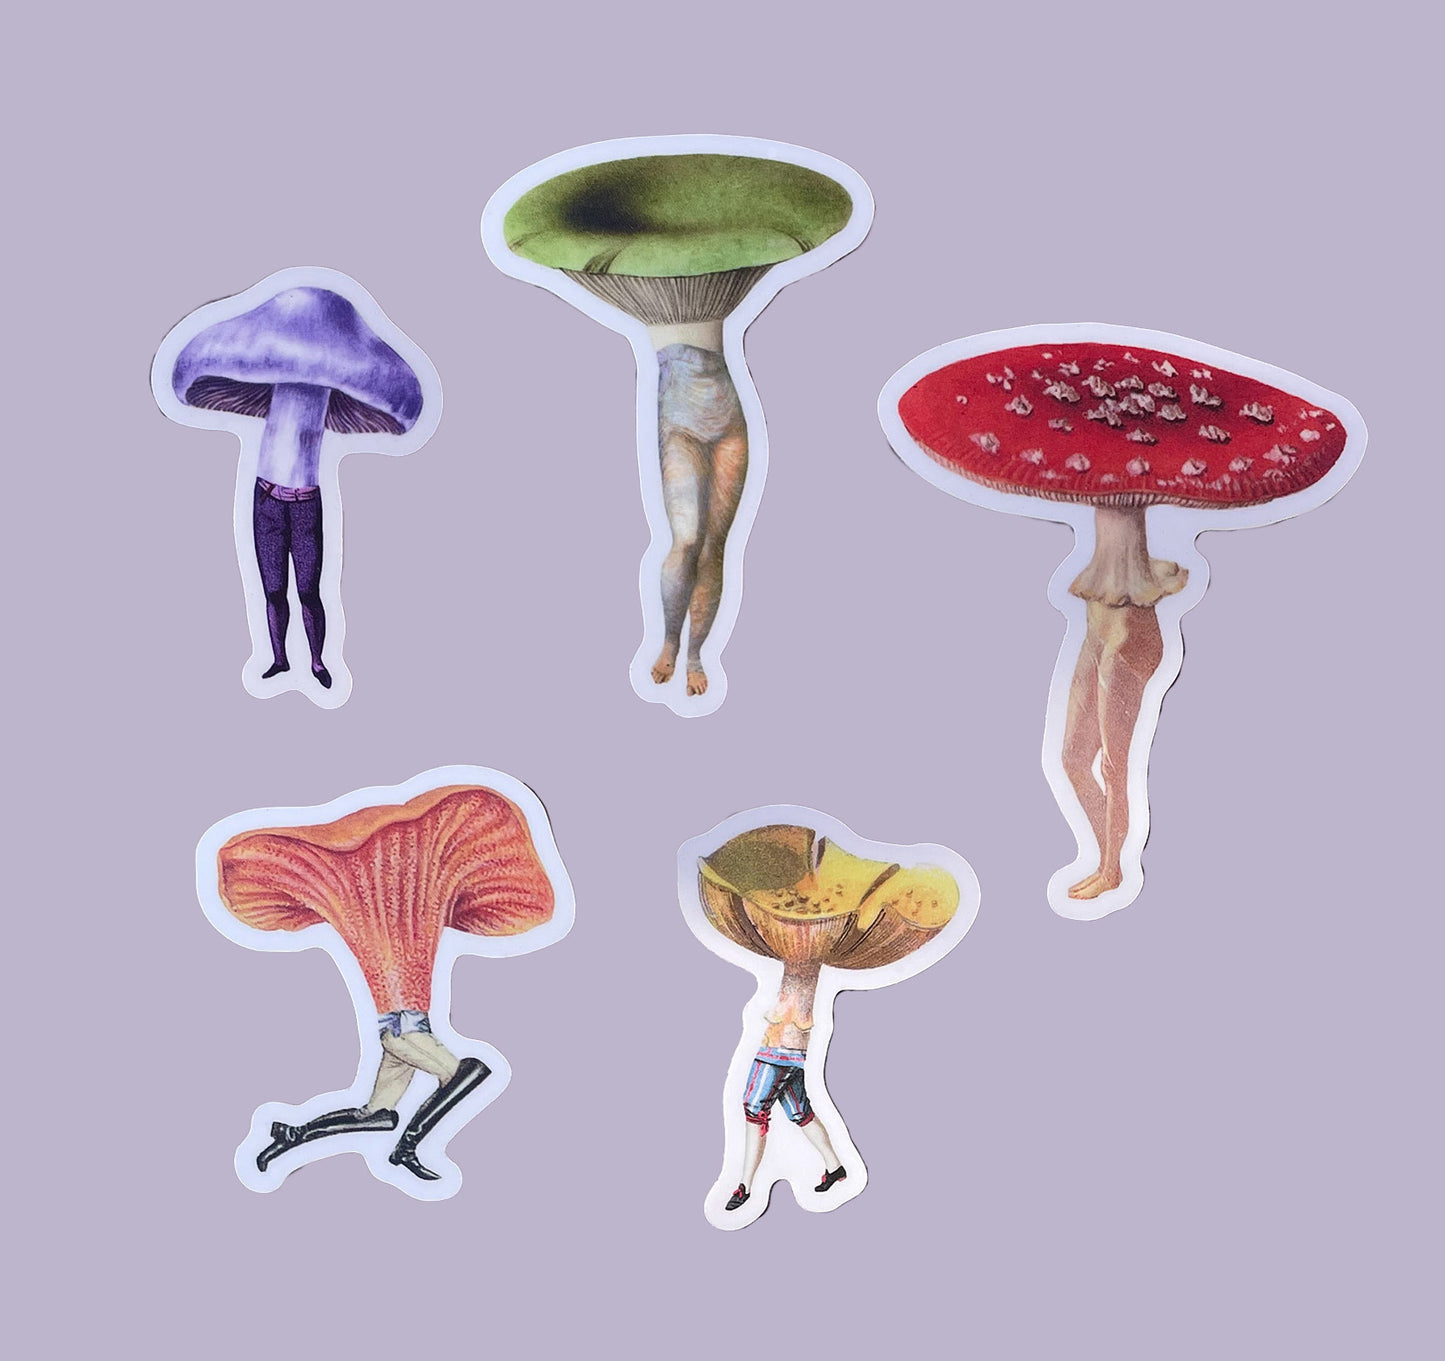 Mushroom People 5-pack sticker set